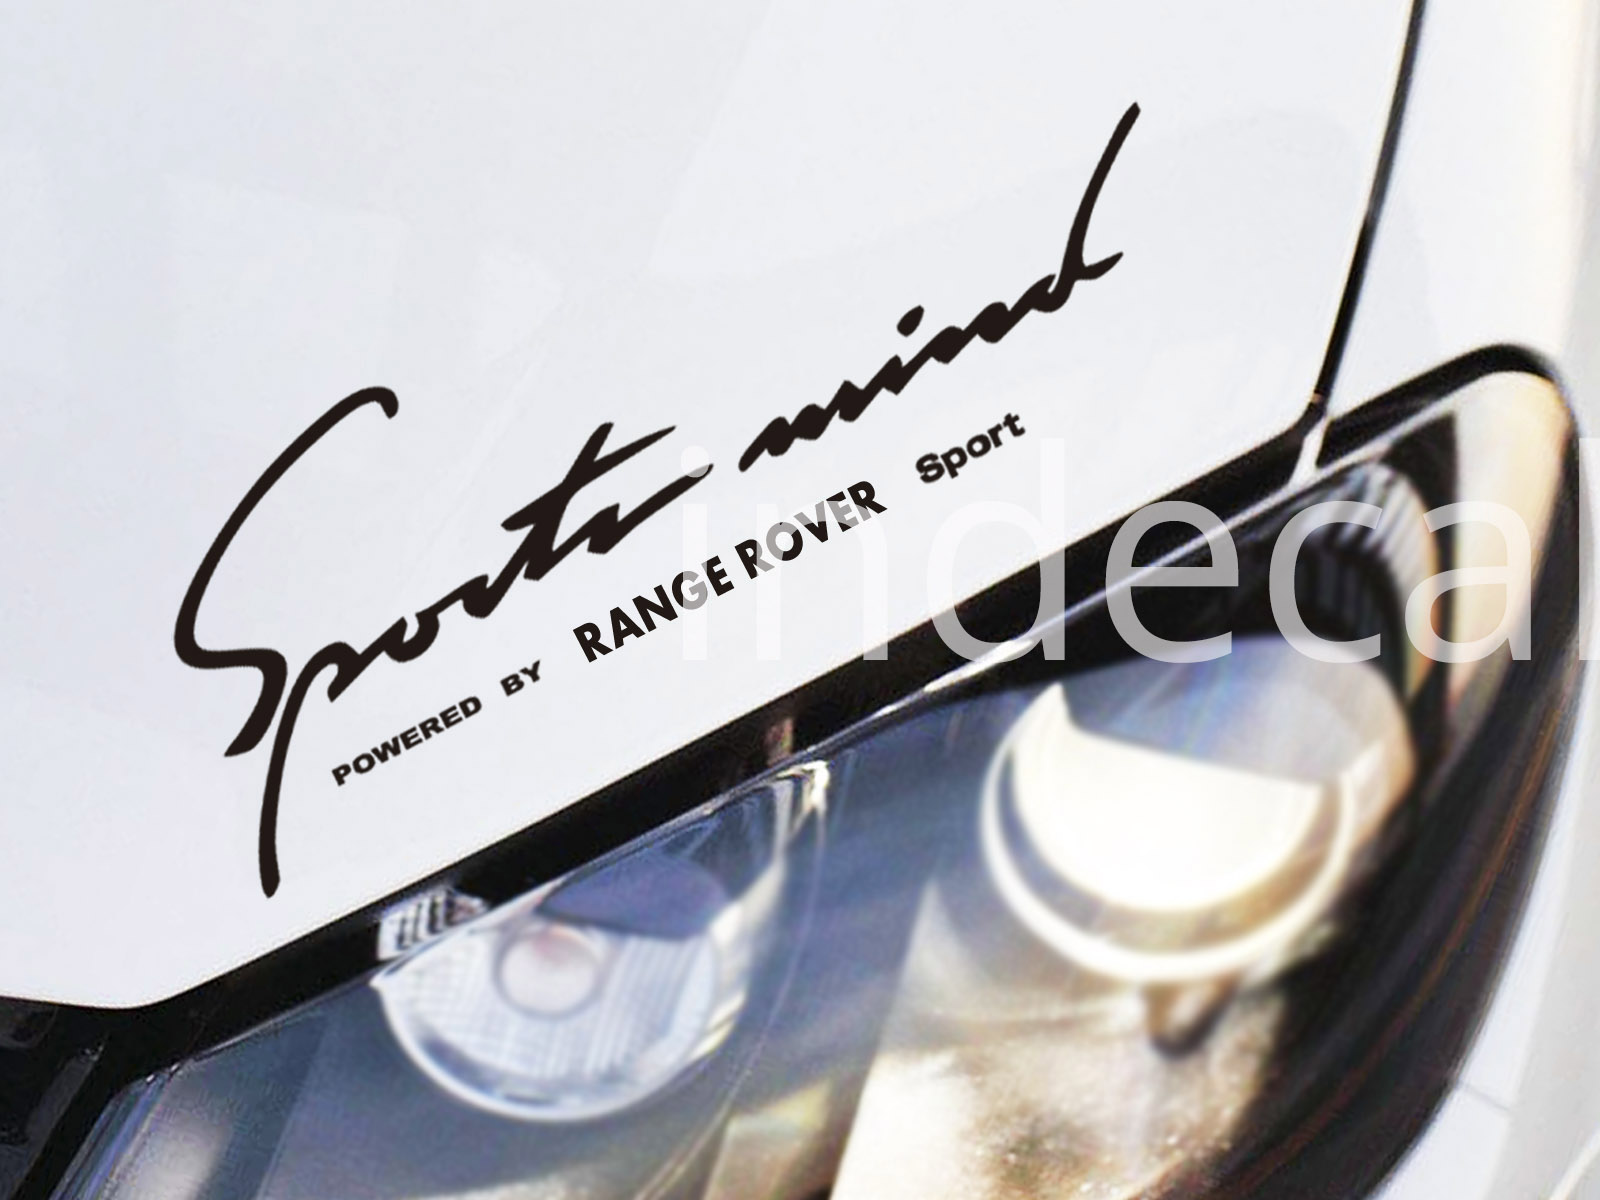 1 x Range Rover Sports Mind Sticker - Black